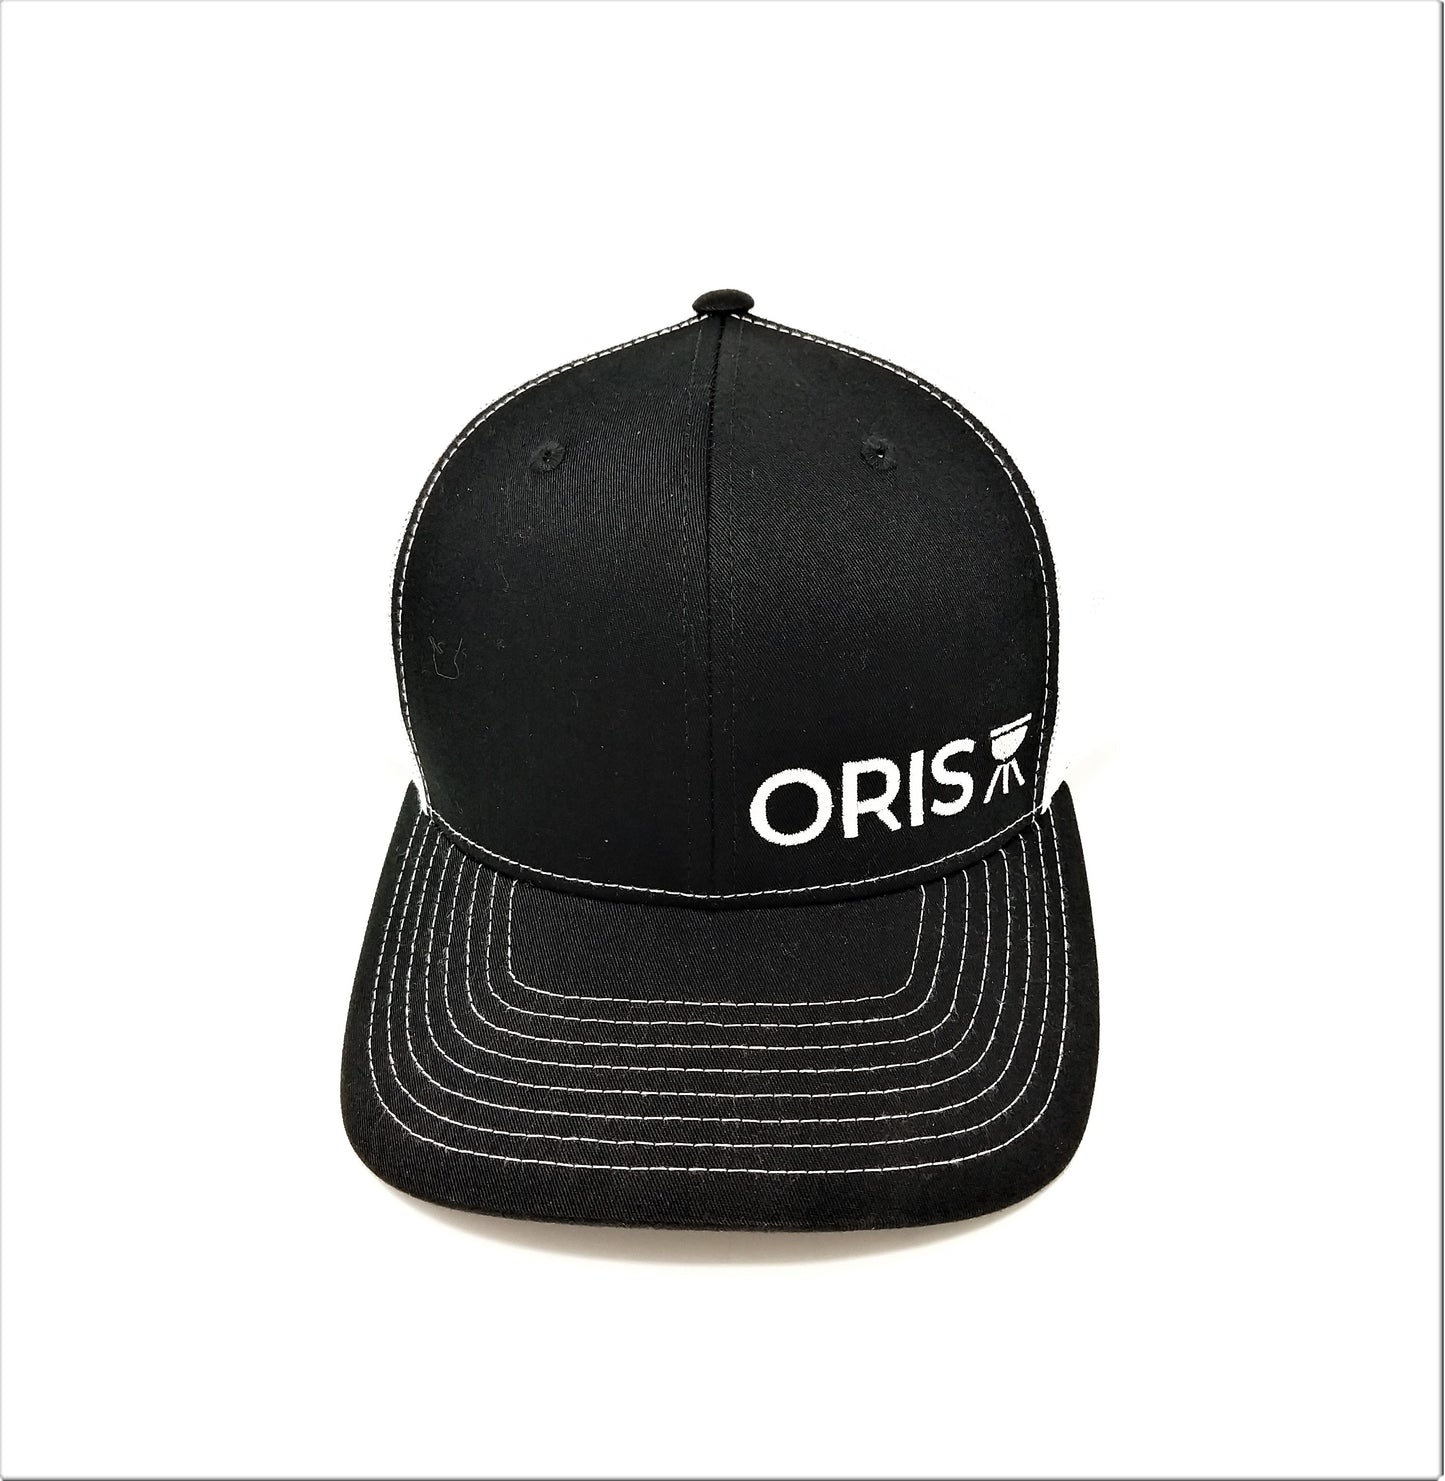 ORIS 6 panel trucker hat Black/White